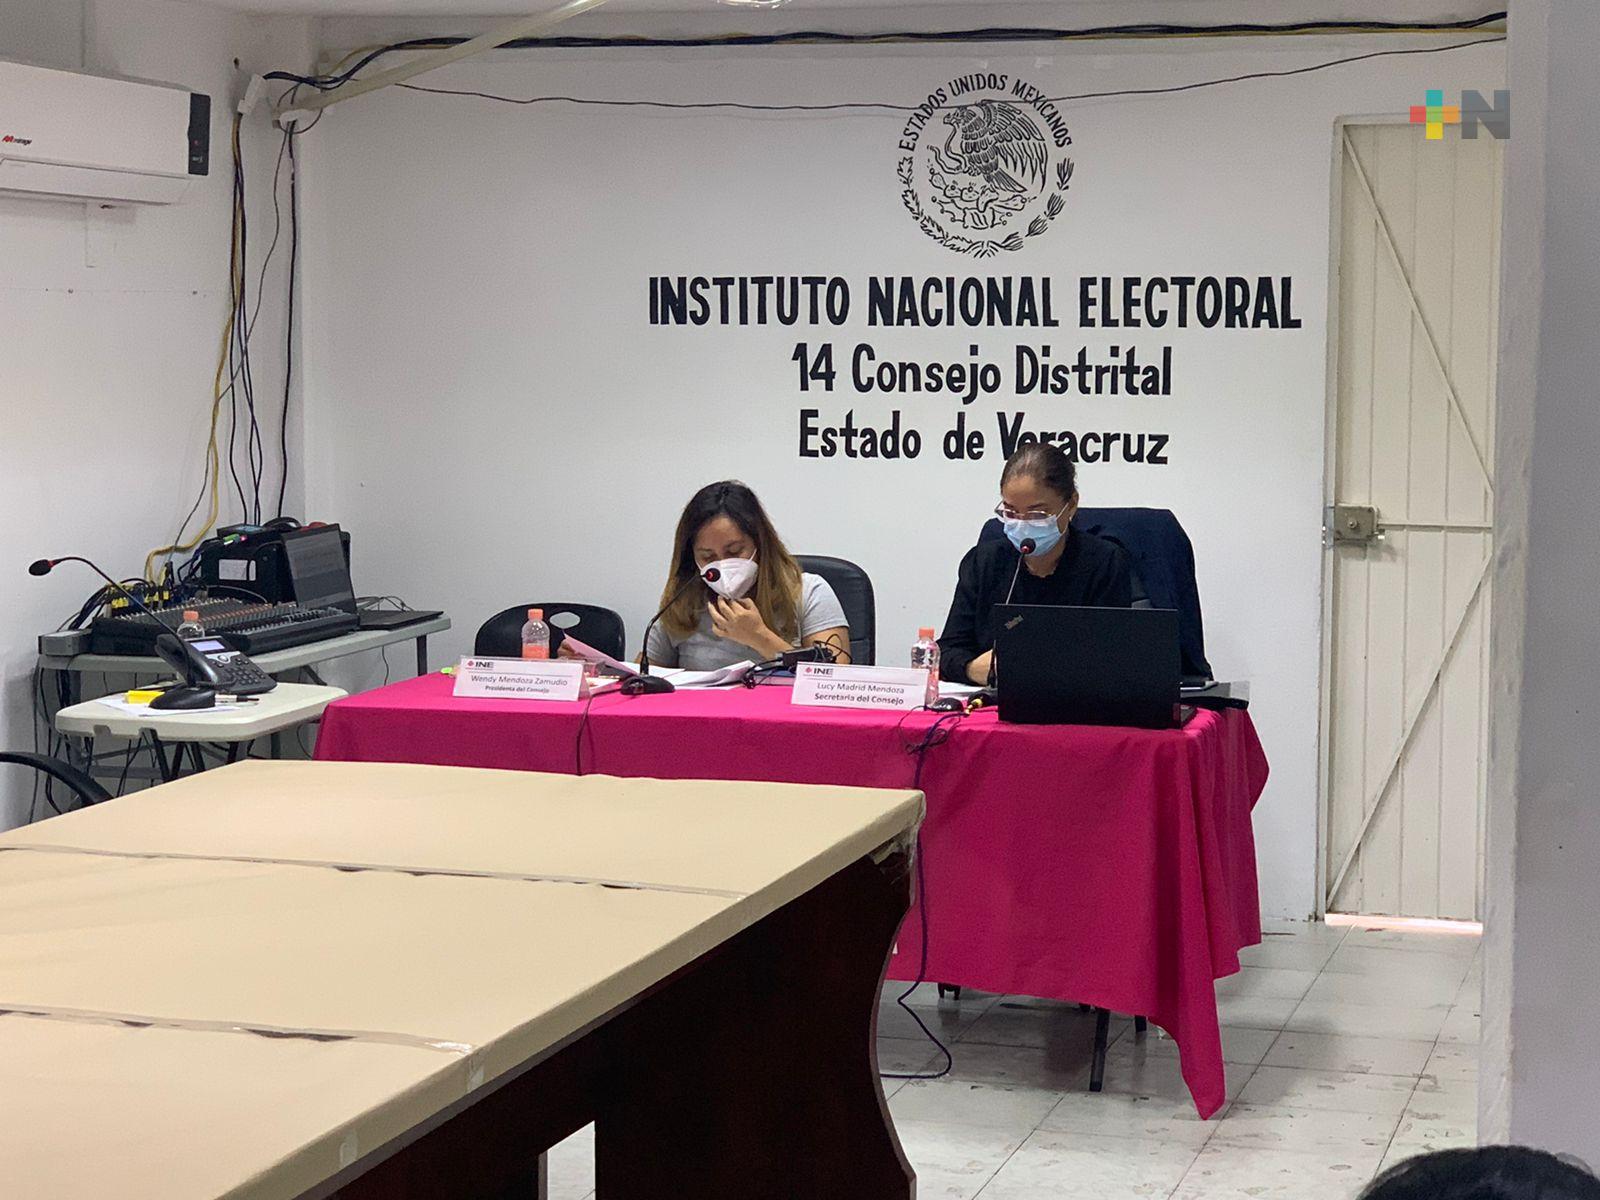 Junta Distrital 14 con sede en Minatitlán lista para recibir paquete electoral